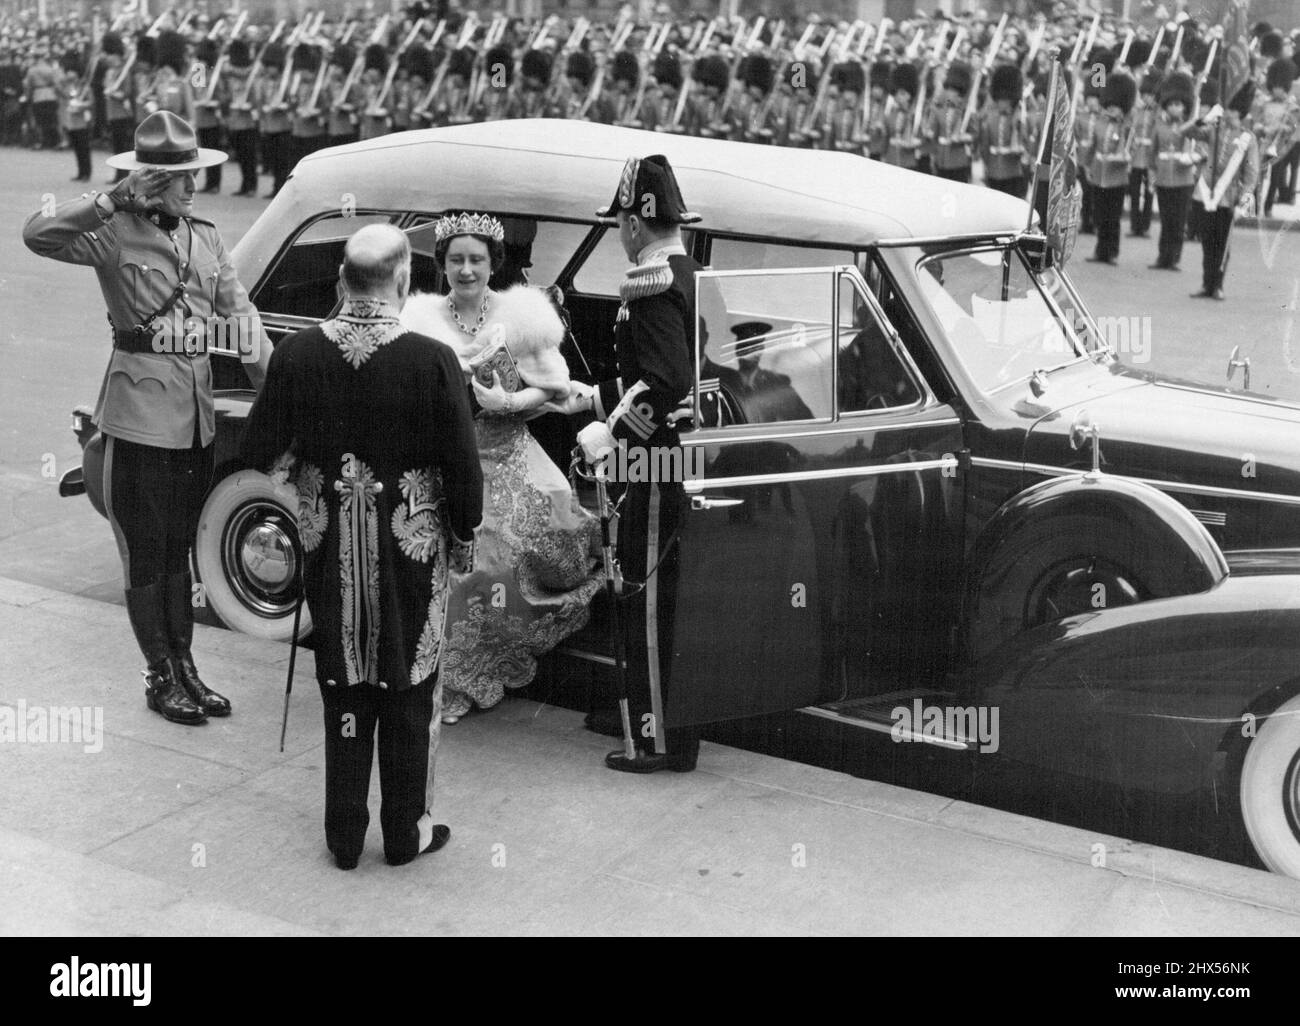 Queen allights de car at Parliament -- vêtu de vêtements de splendeur à couper le souffle la reine Elizabeth est accueillie par de hauts fonctionnaires alors qu'elle marche d'une voiture avant la maison du Parlement Ottawa, le 19th mai. Leurs Majestés ont été officiellement présentés aux députés. 19 juin 1939. (Photo par Acme photo). Banque D'Images